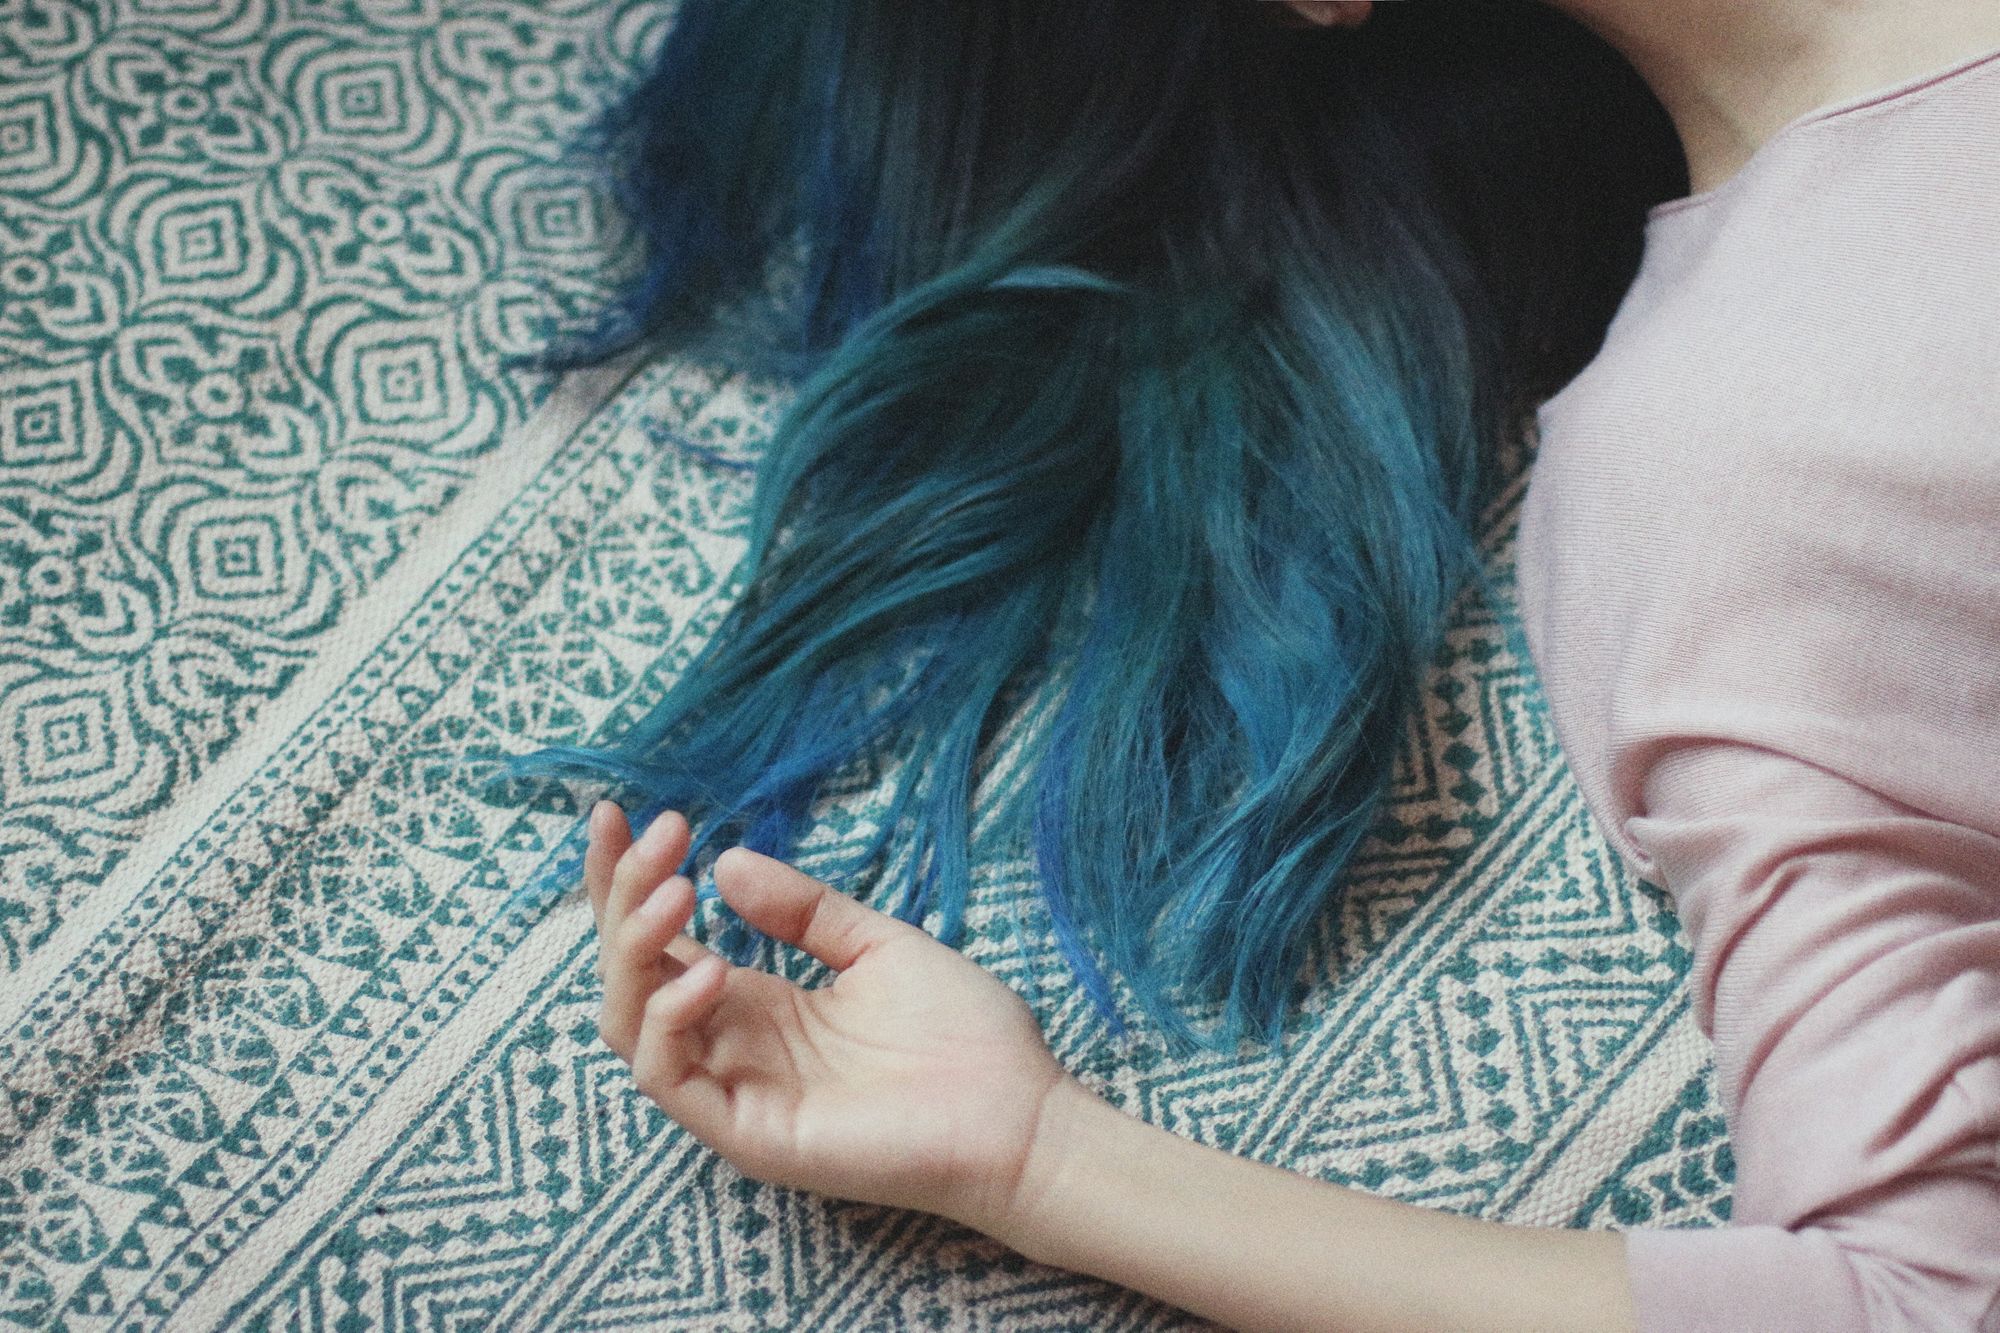 Làm thế nào để “chiến” được mái tóc màu xanh đen mà bạn luôn muốn có